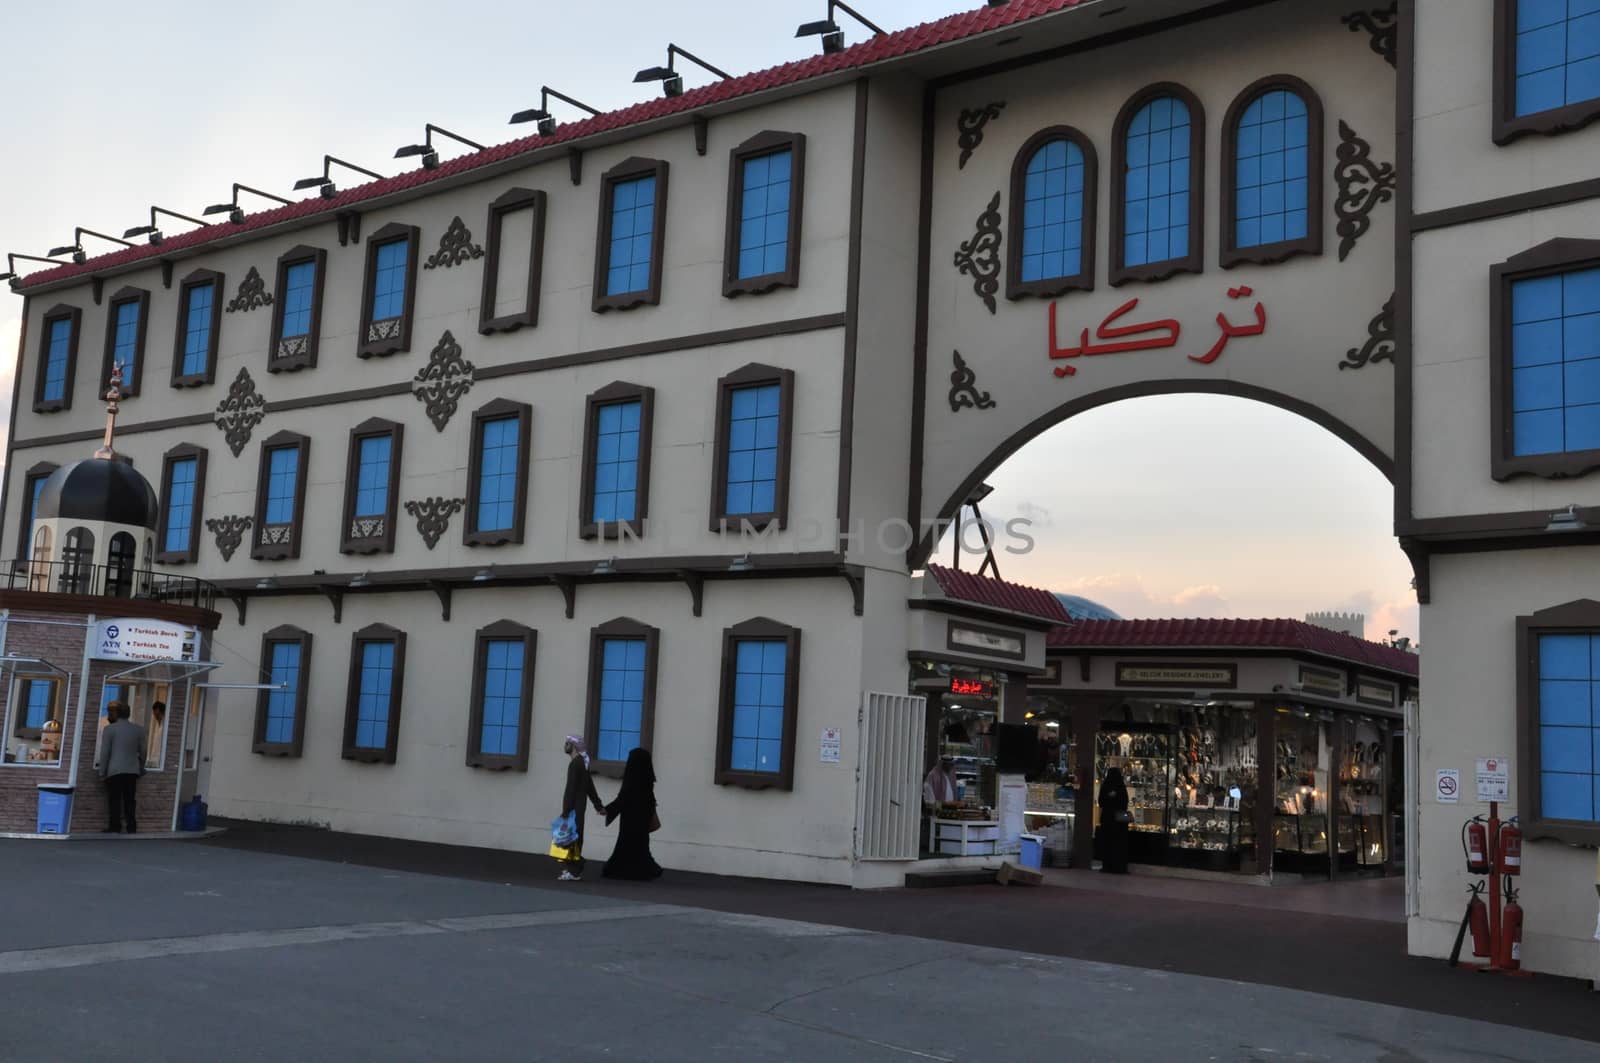 Turkey pavilion at Global Village in Dubai, UAE by sainaniritu